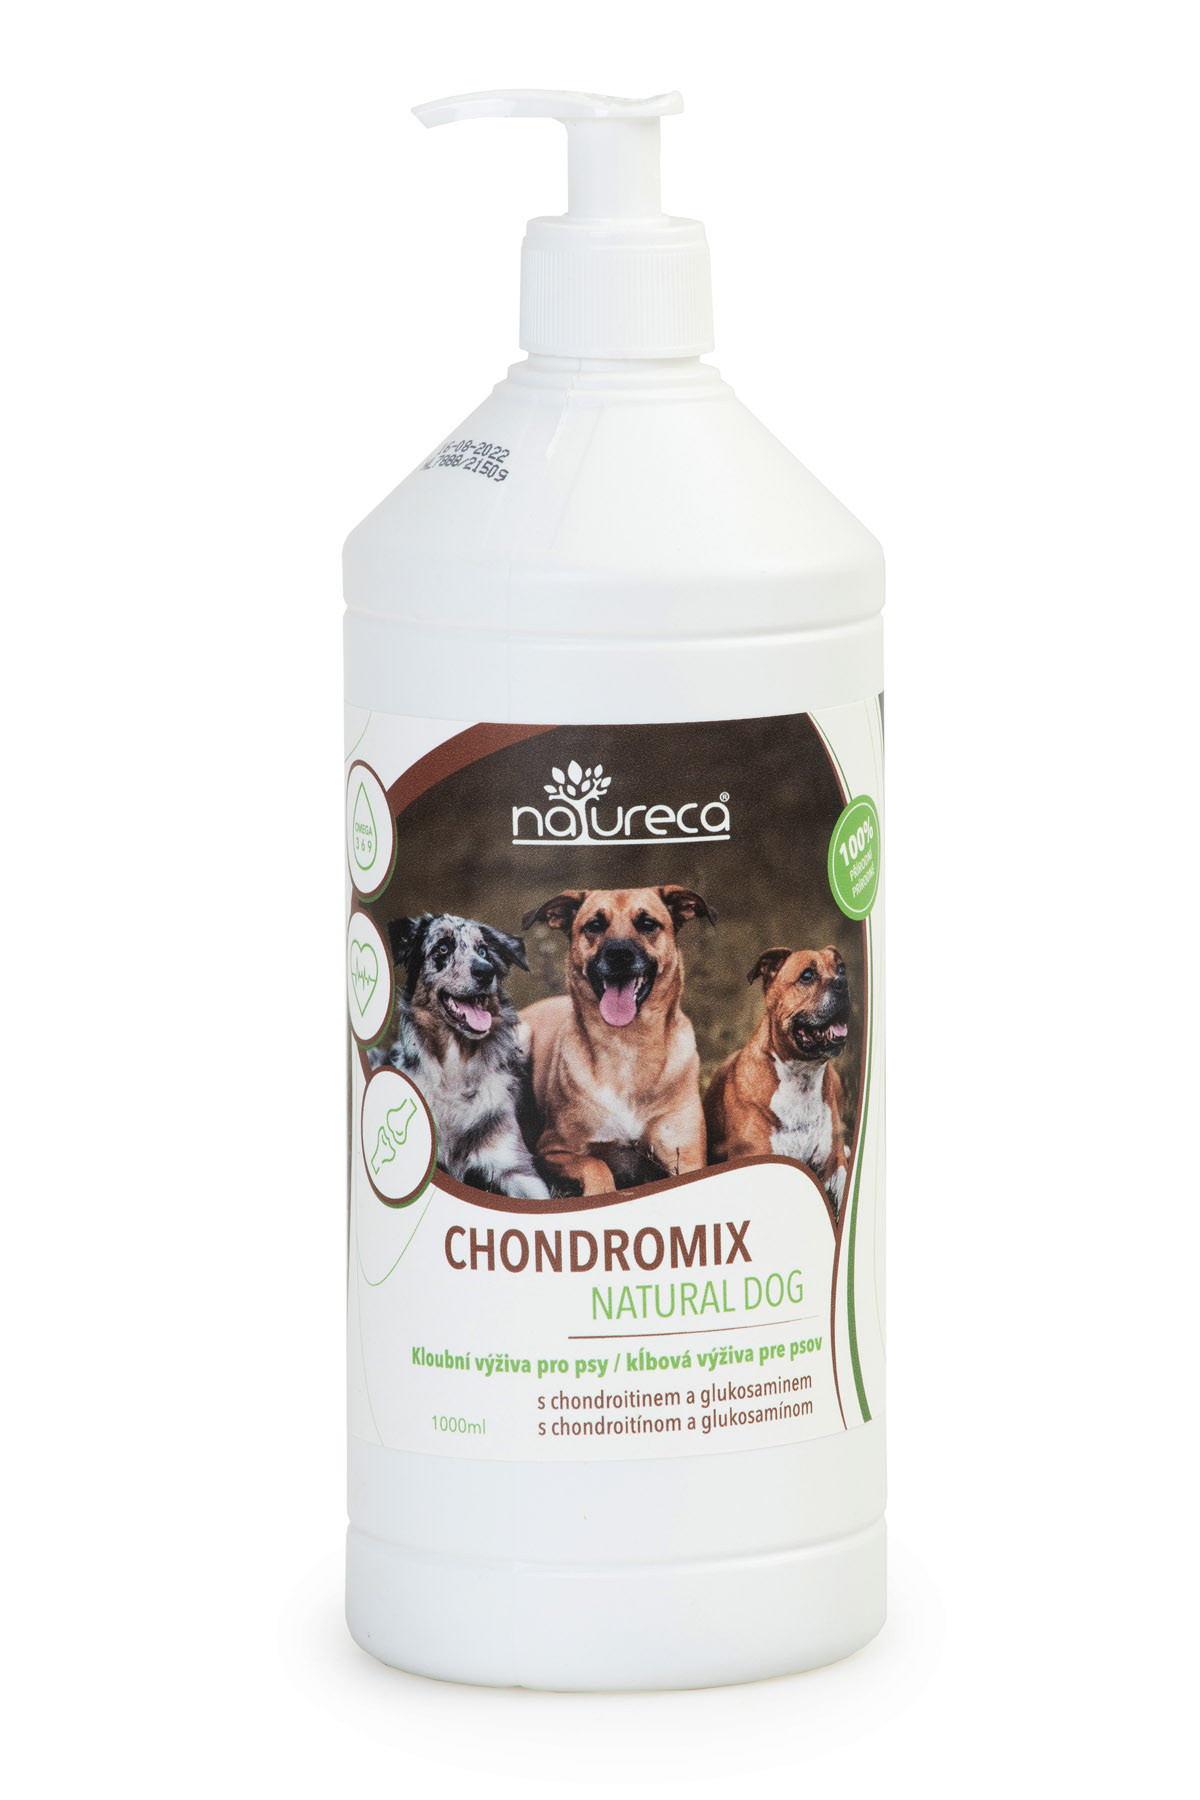 Chondromix Natural Dog 1000ml, kloubní výživa 